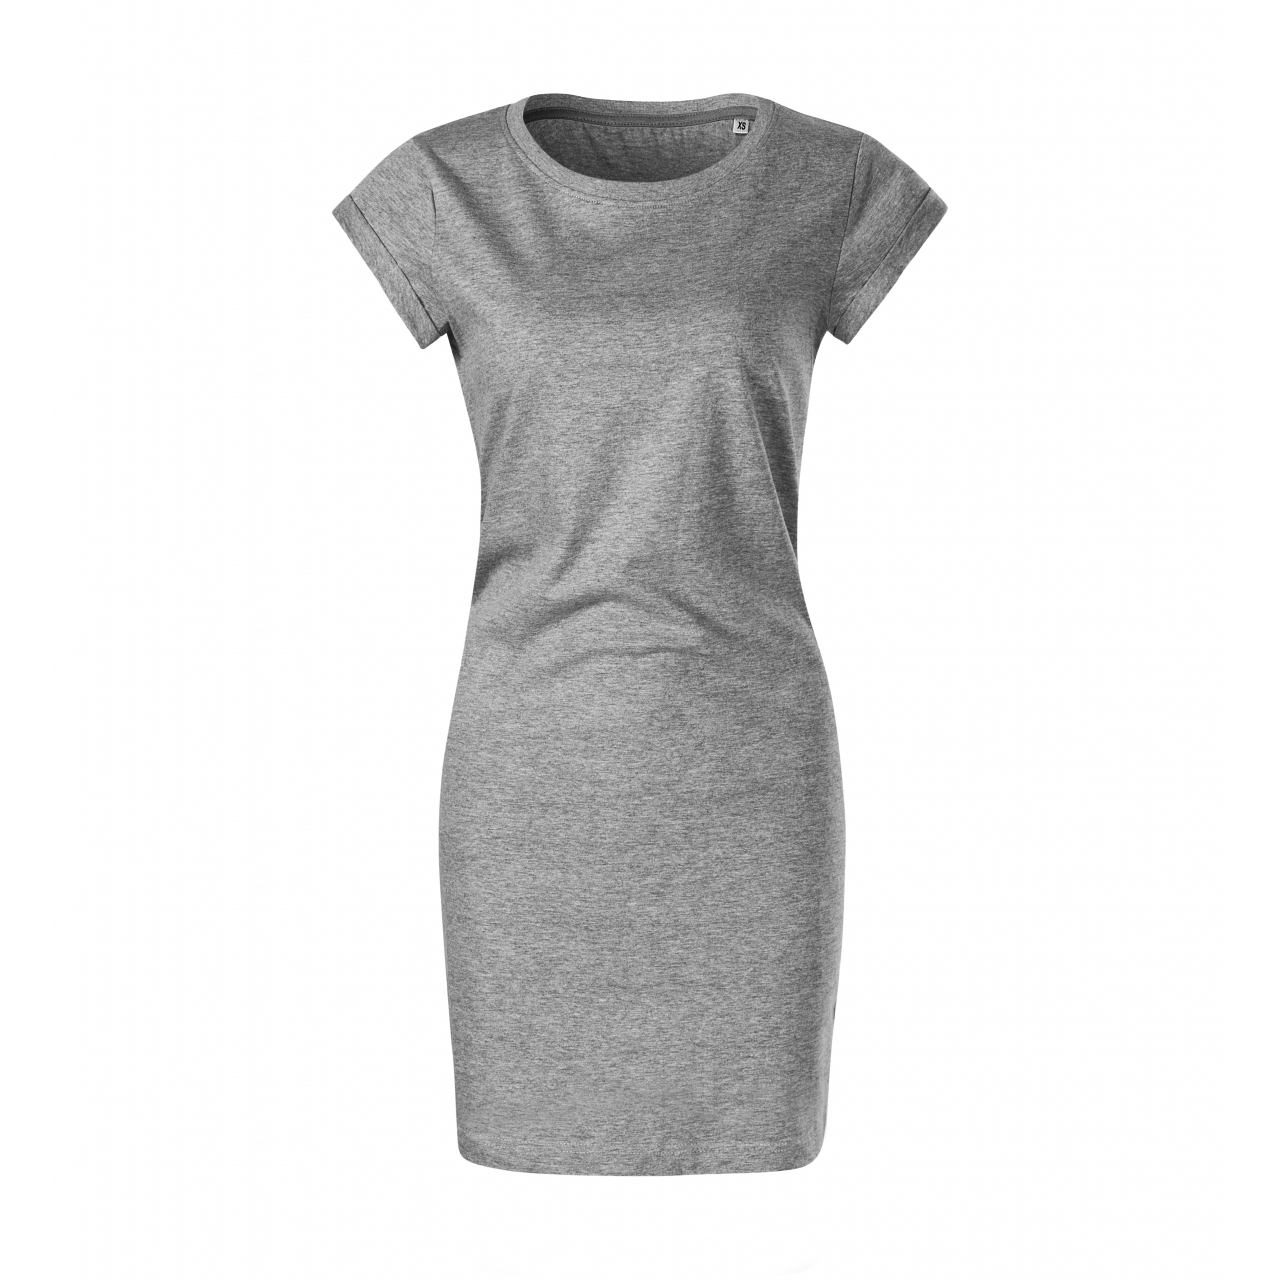 Šaty dámské Malfini Freedom - šedé, L